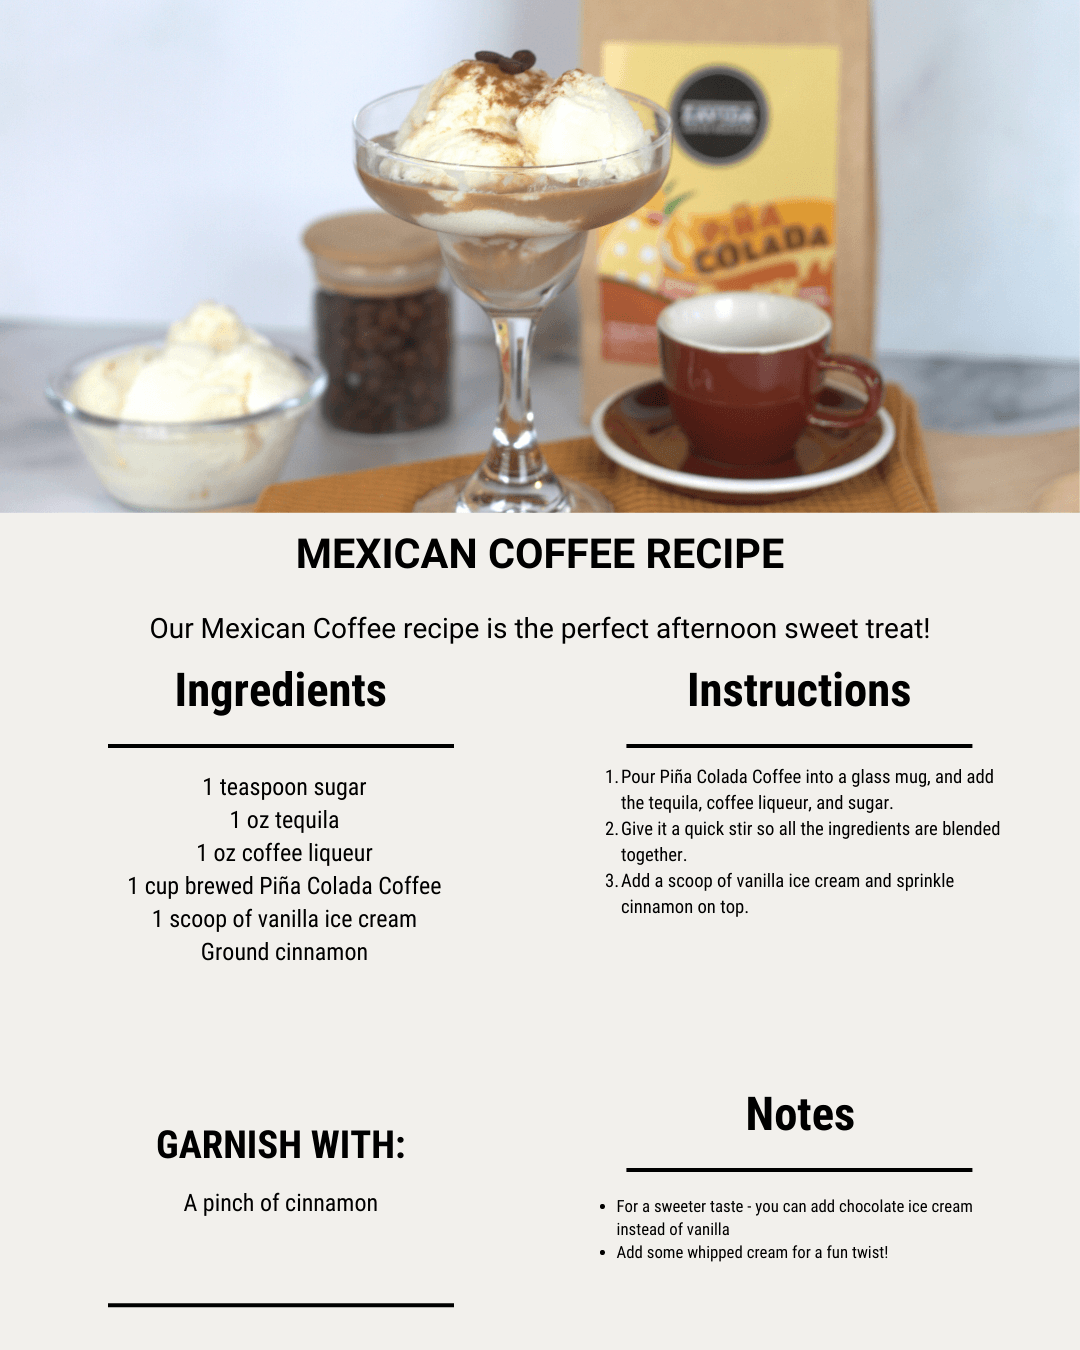 The steps to make Zavida's Tropical Cinco de Mayo Coffee recipe